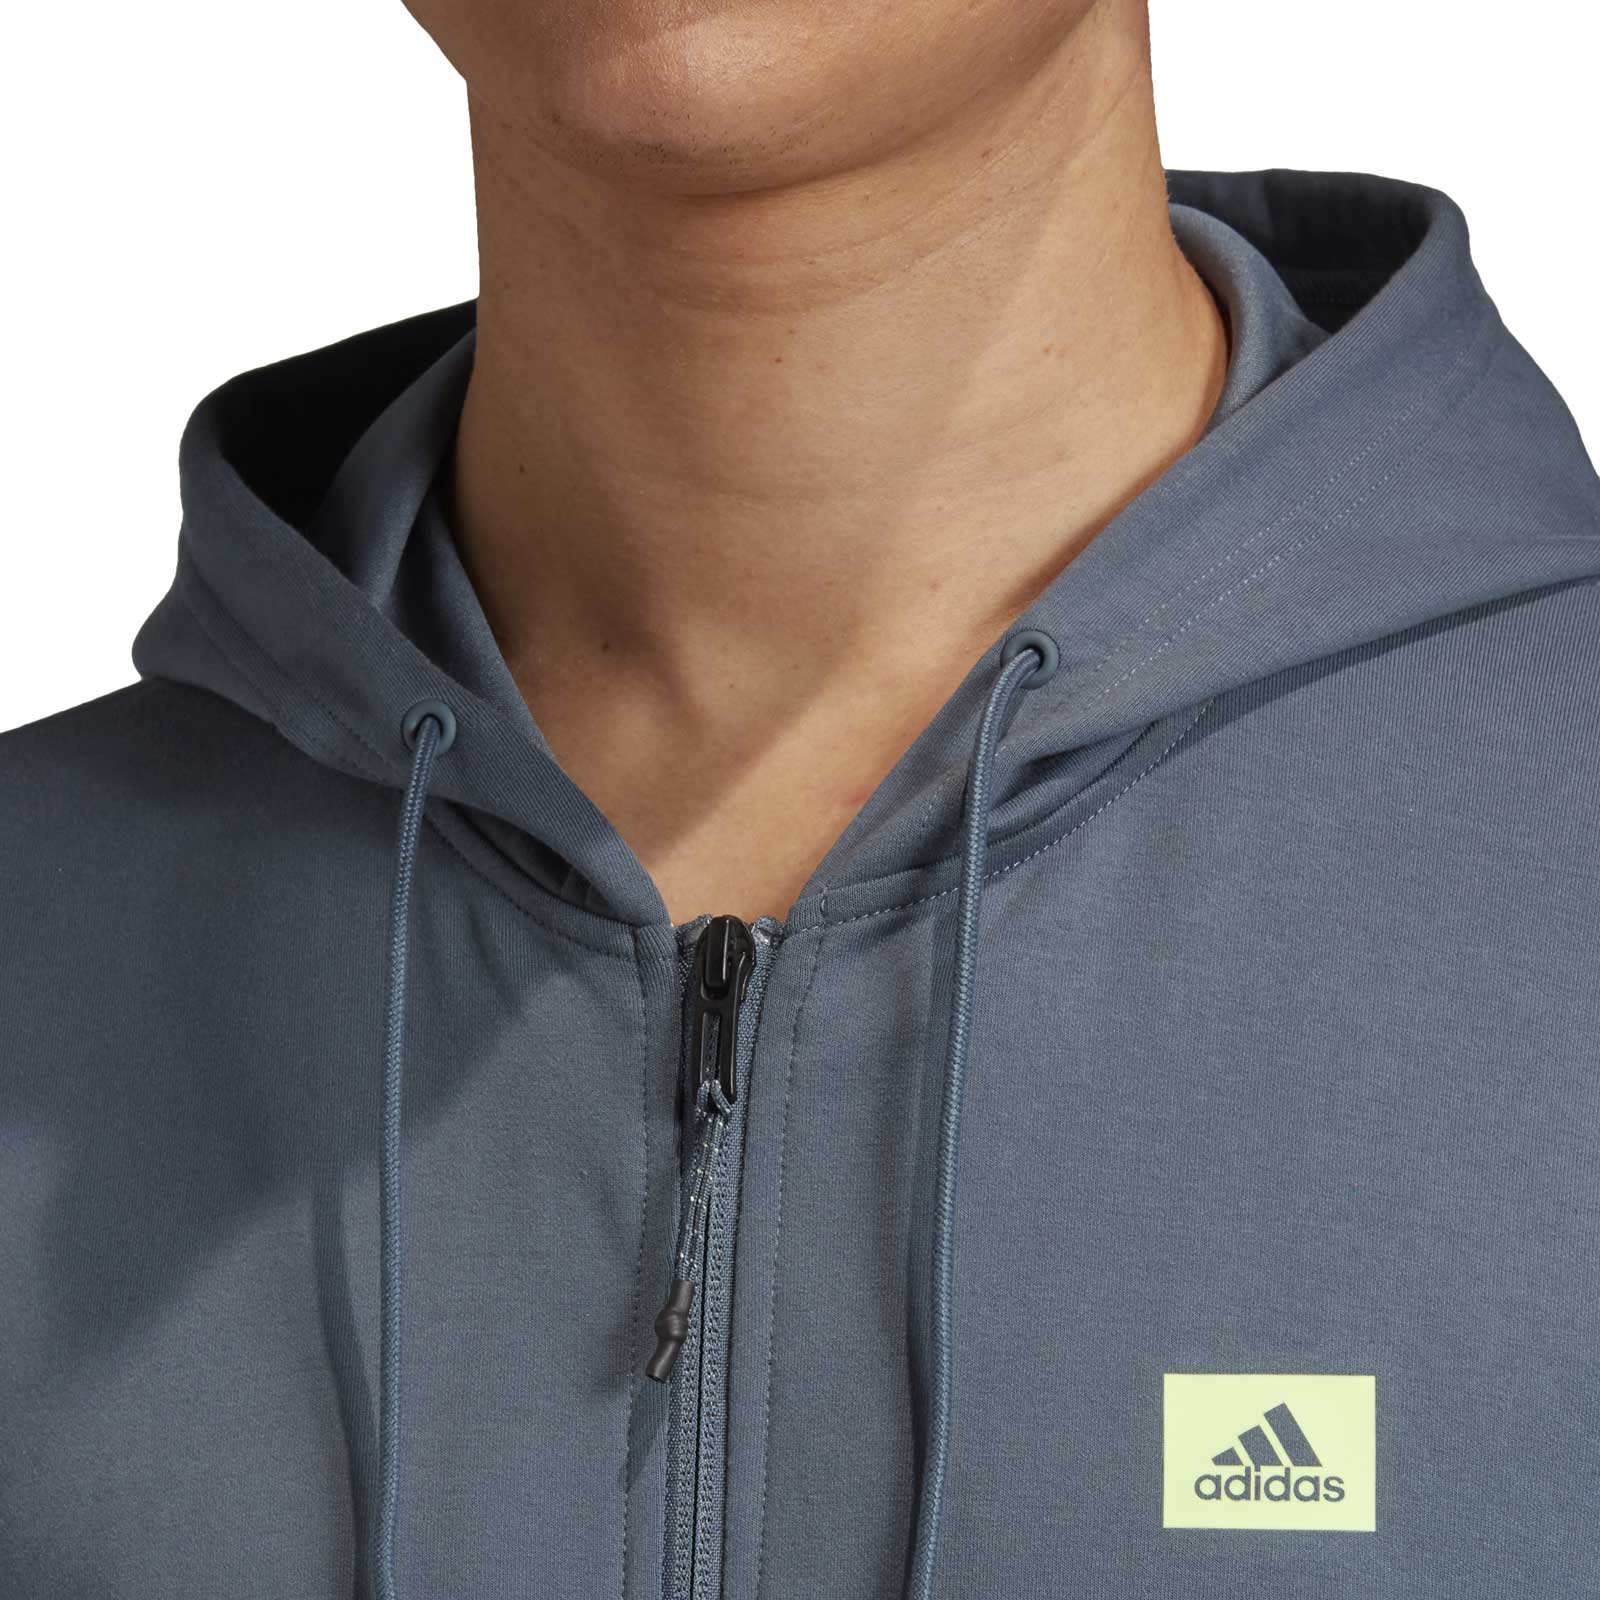 Men’s sports sweatshirt